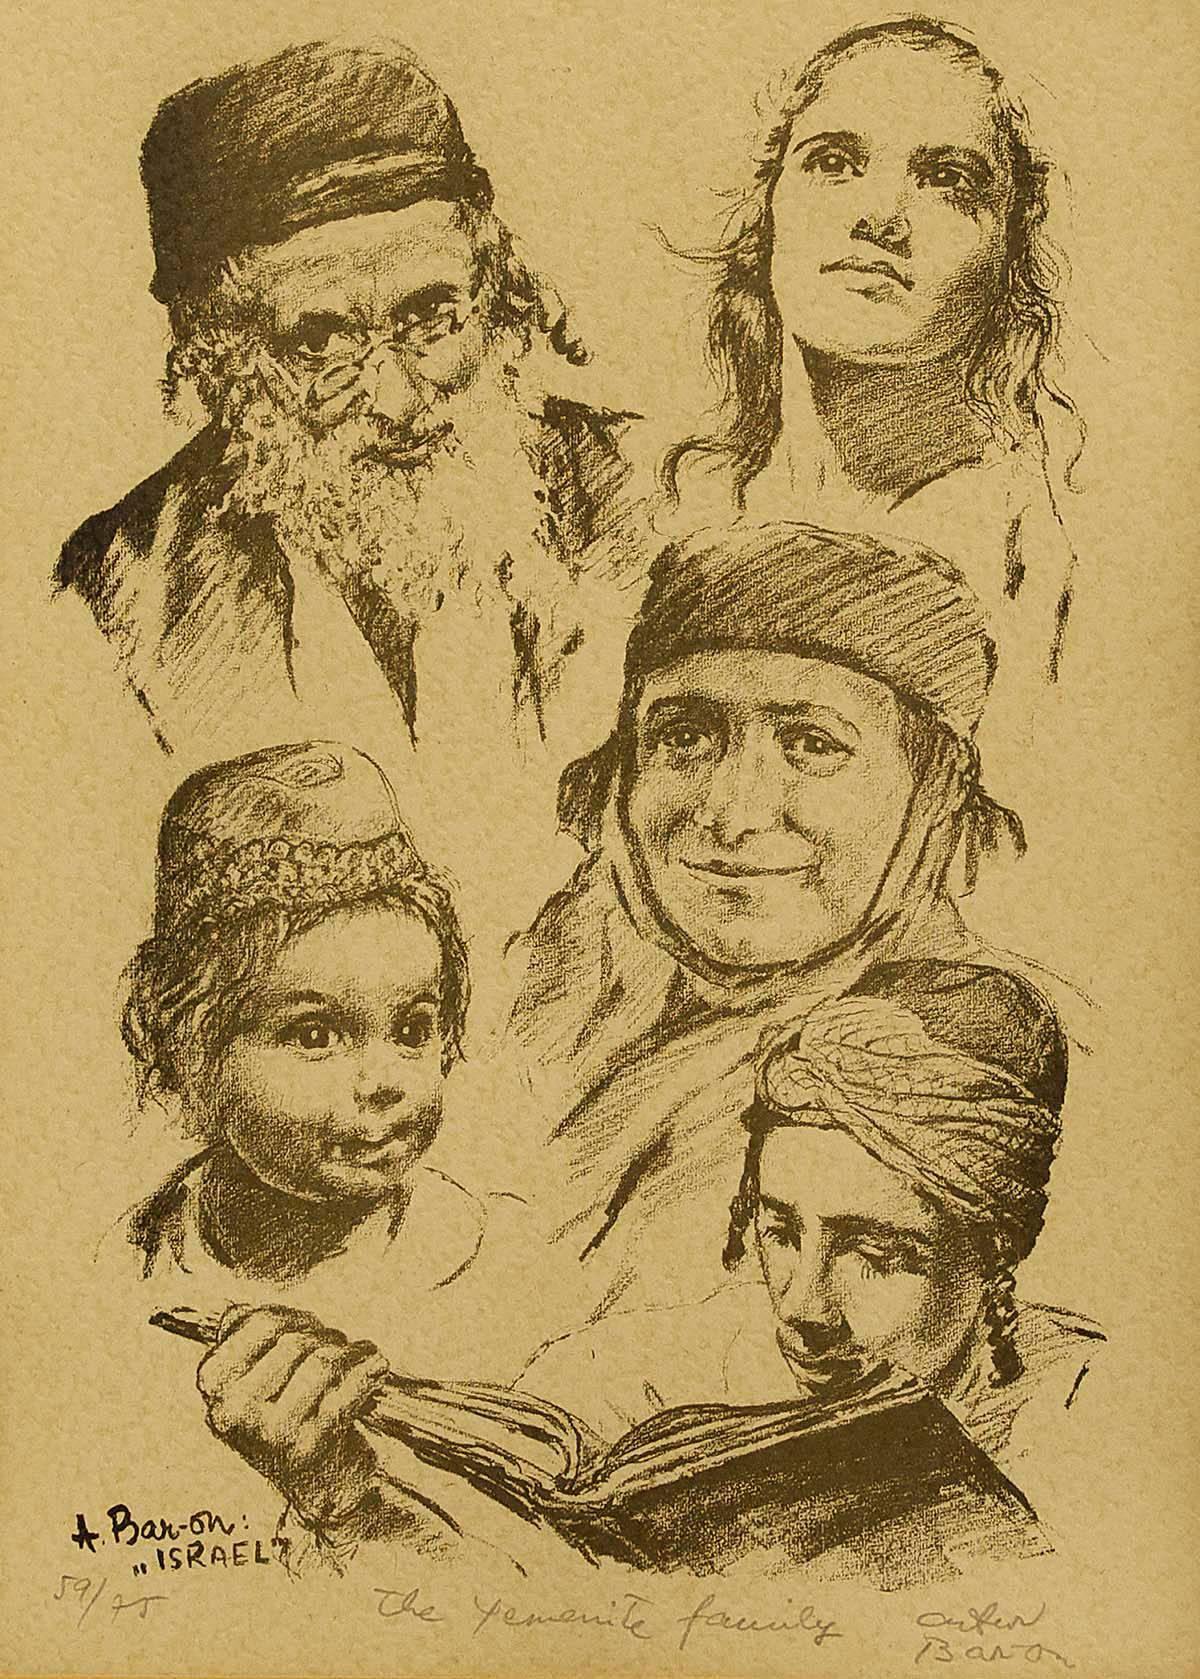 Portrait de famille israélienne multigénérationnelle, famille israélienne - Print de Arthur Bar-on